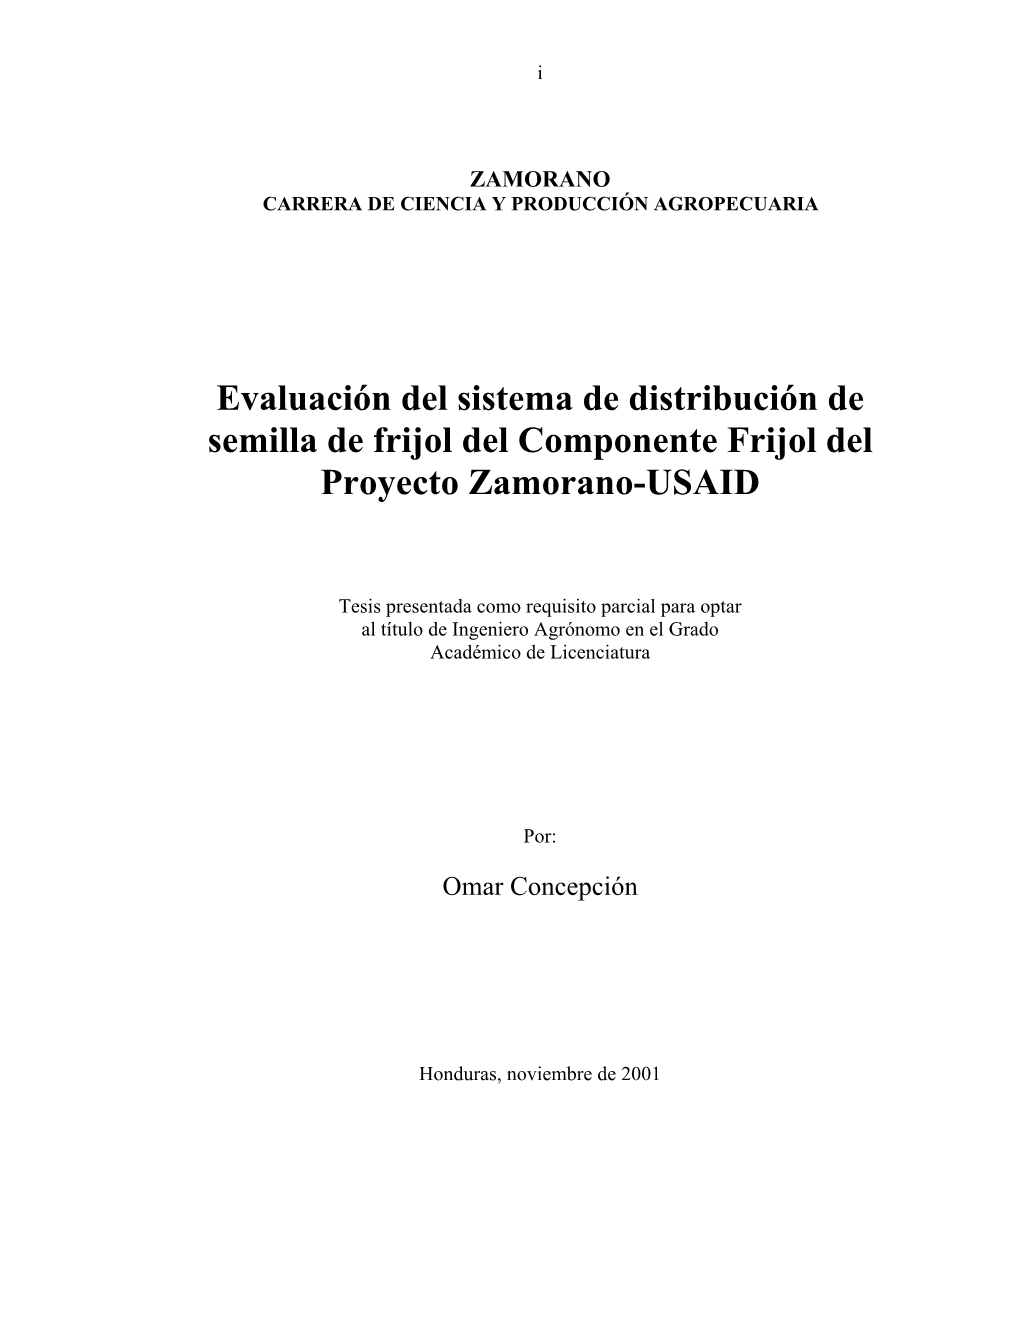 Evaluación Del Sistema De Distribución De Semilla De Frijol Del Componente Frijol Del Proyecto Zamorano-USAID